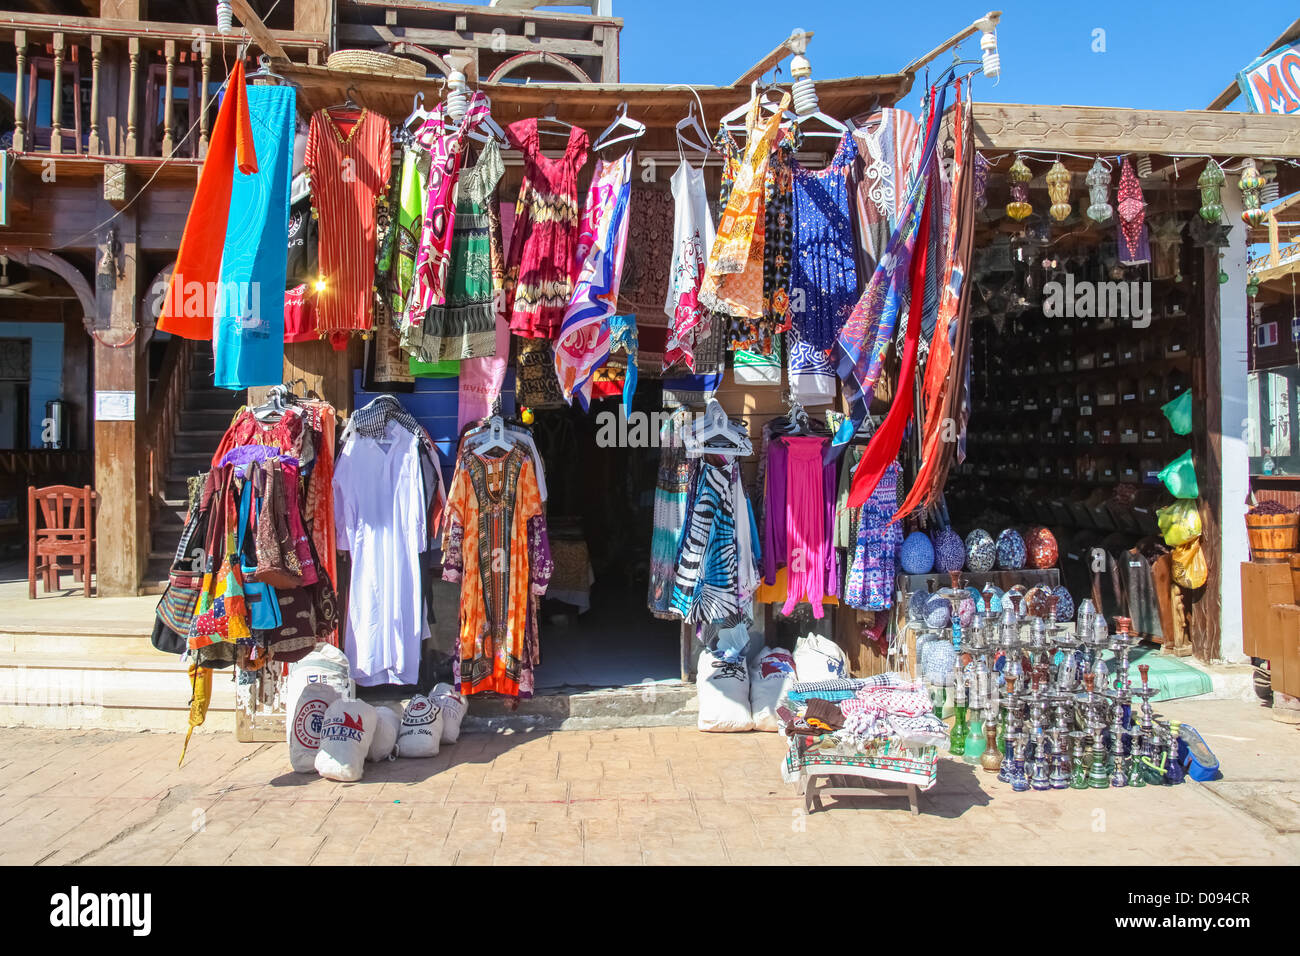 Magasin de la rue dans un marché à Dahab, Egypte. Banque D'Images